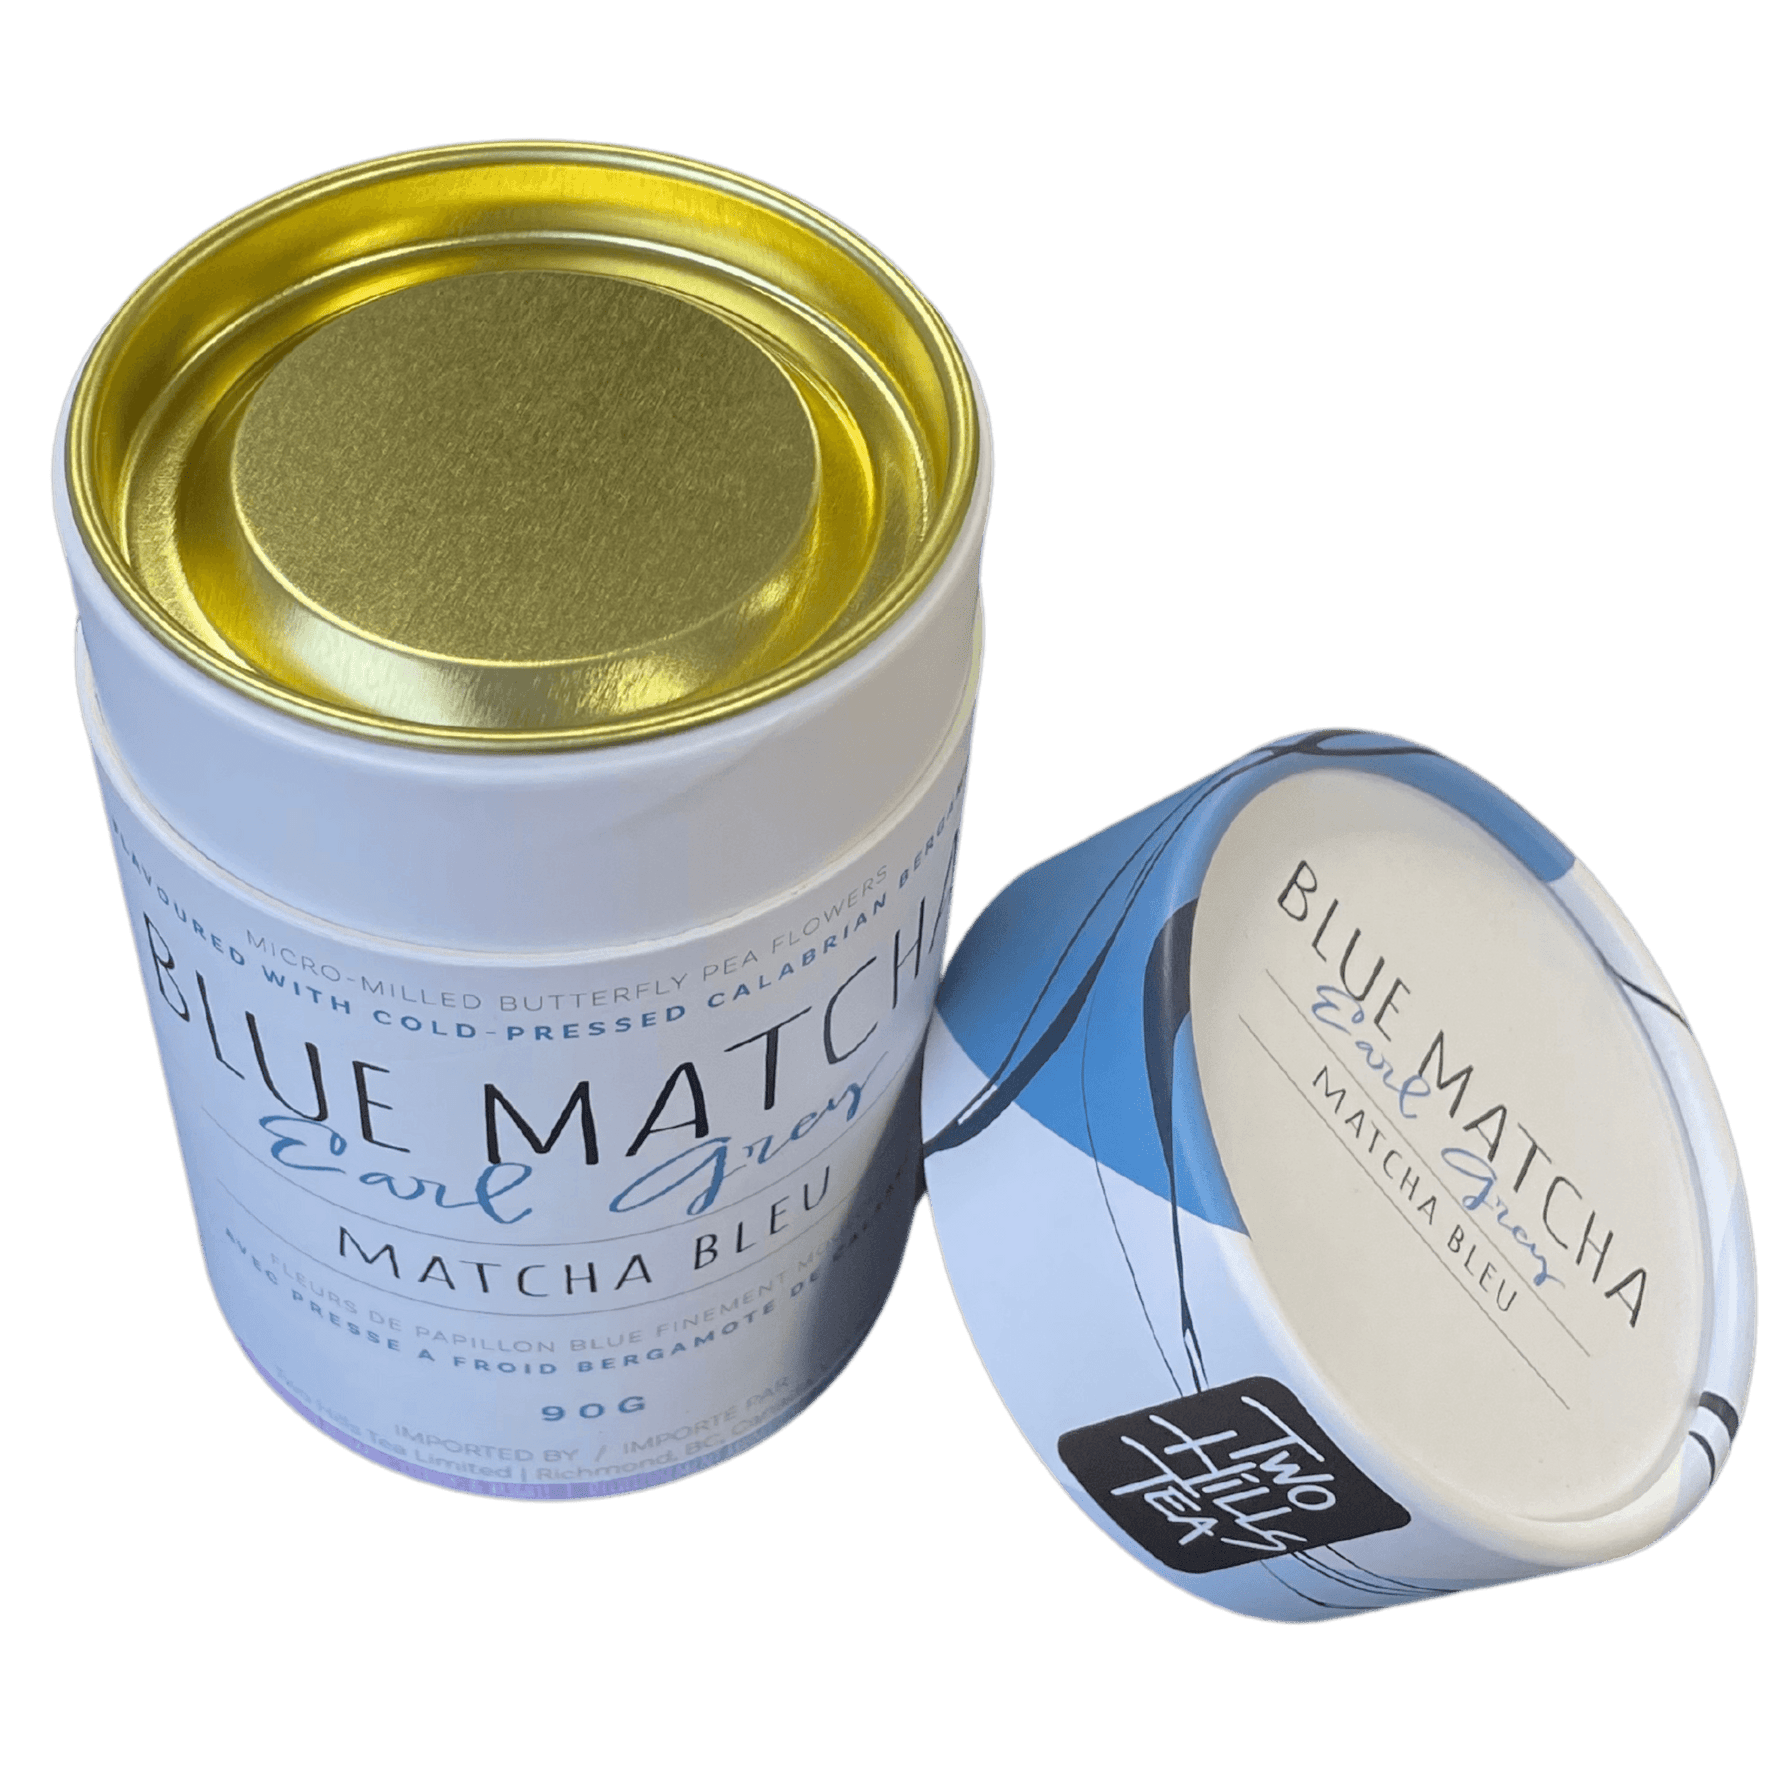 Blue Matcha Earl Grey - 90g - Two Hills Tea